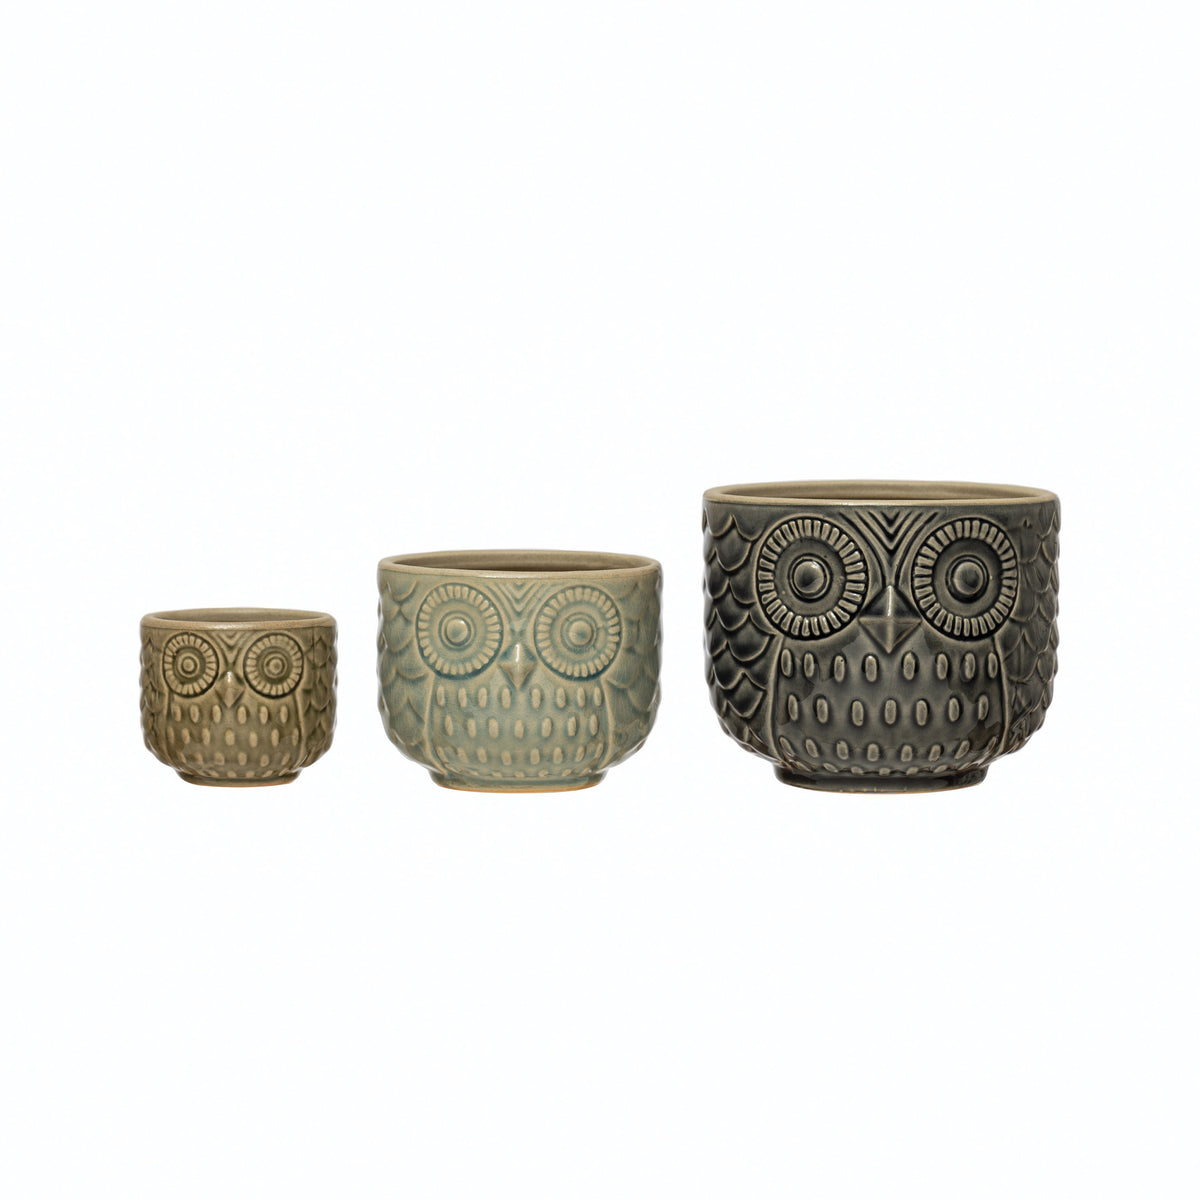 Small Decorative Stoneware Owl Container